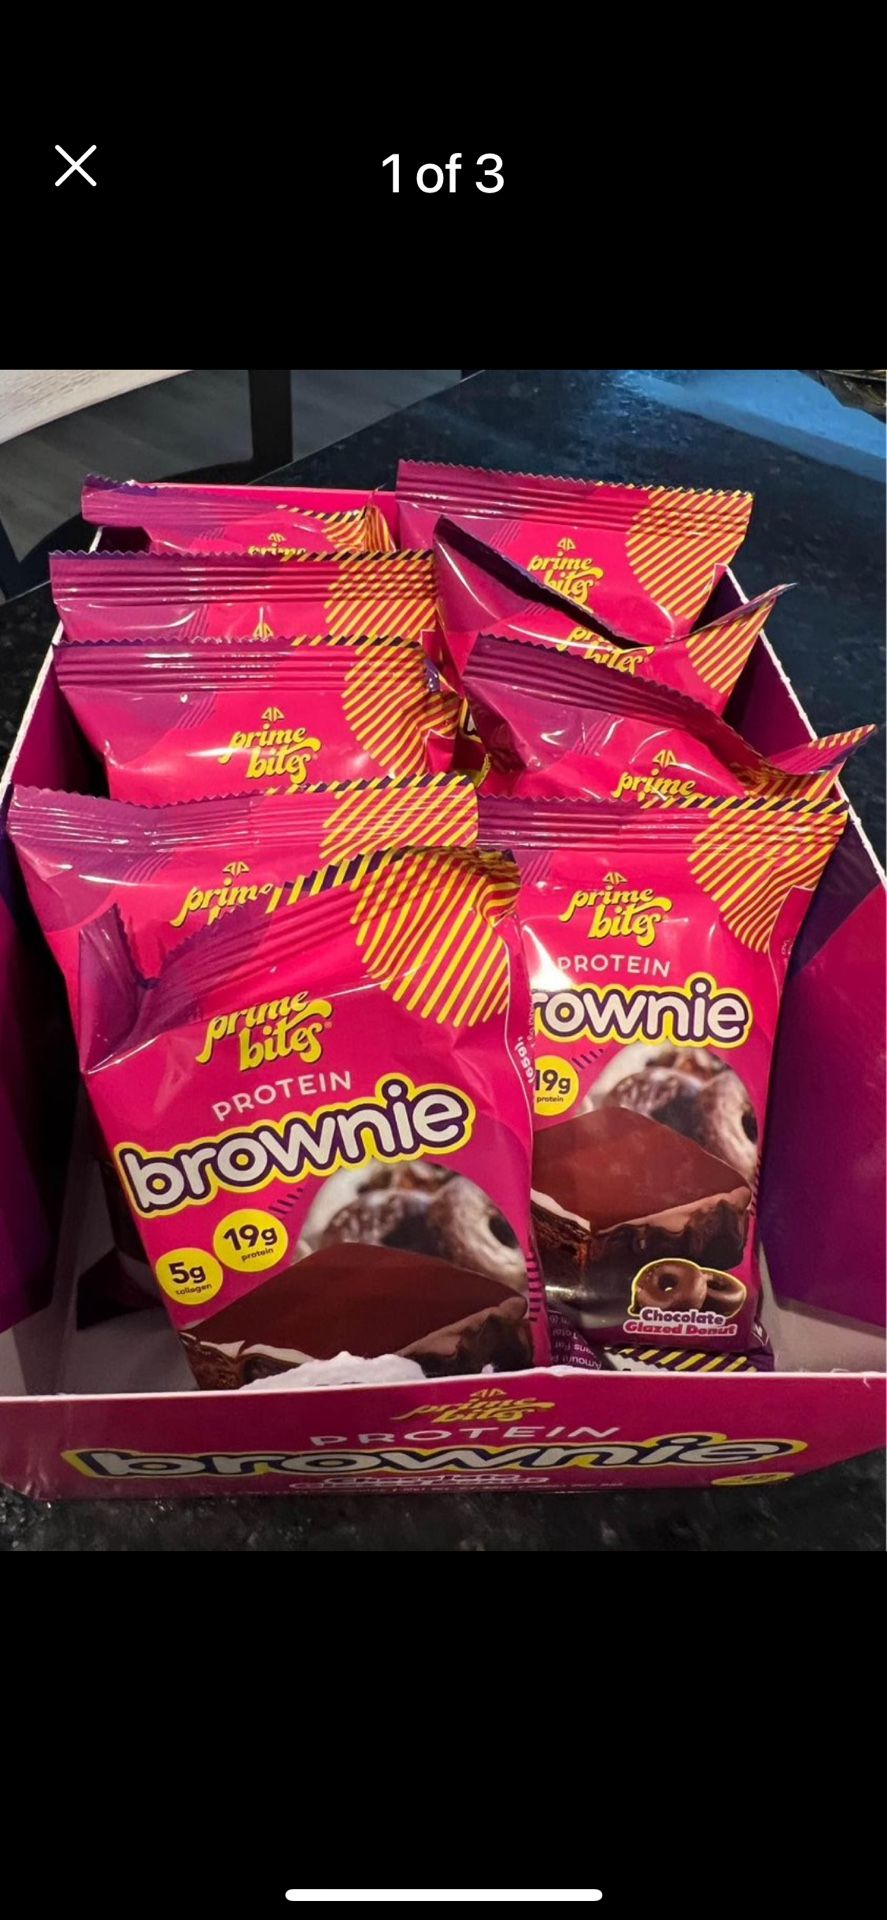 TikTok Famous Prime Protein Brownies